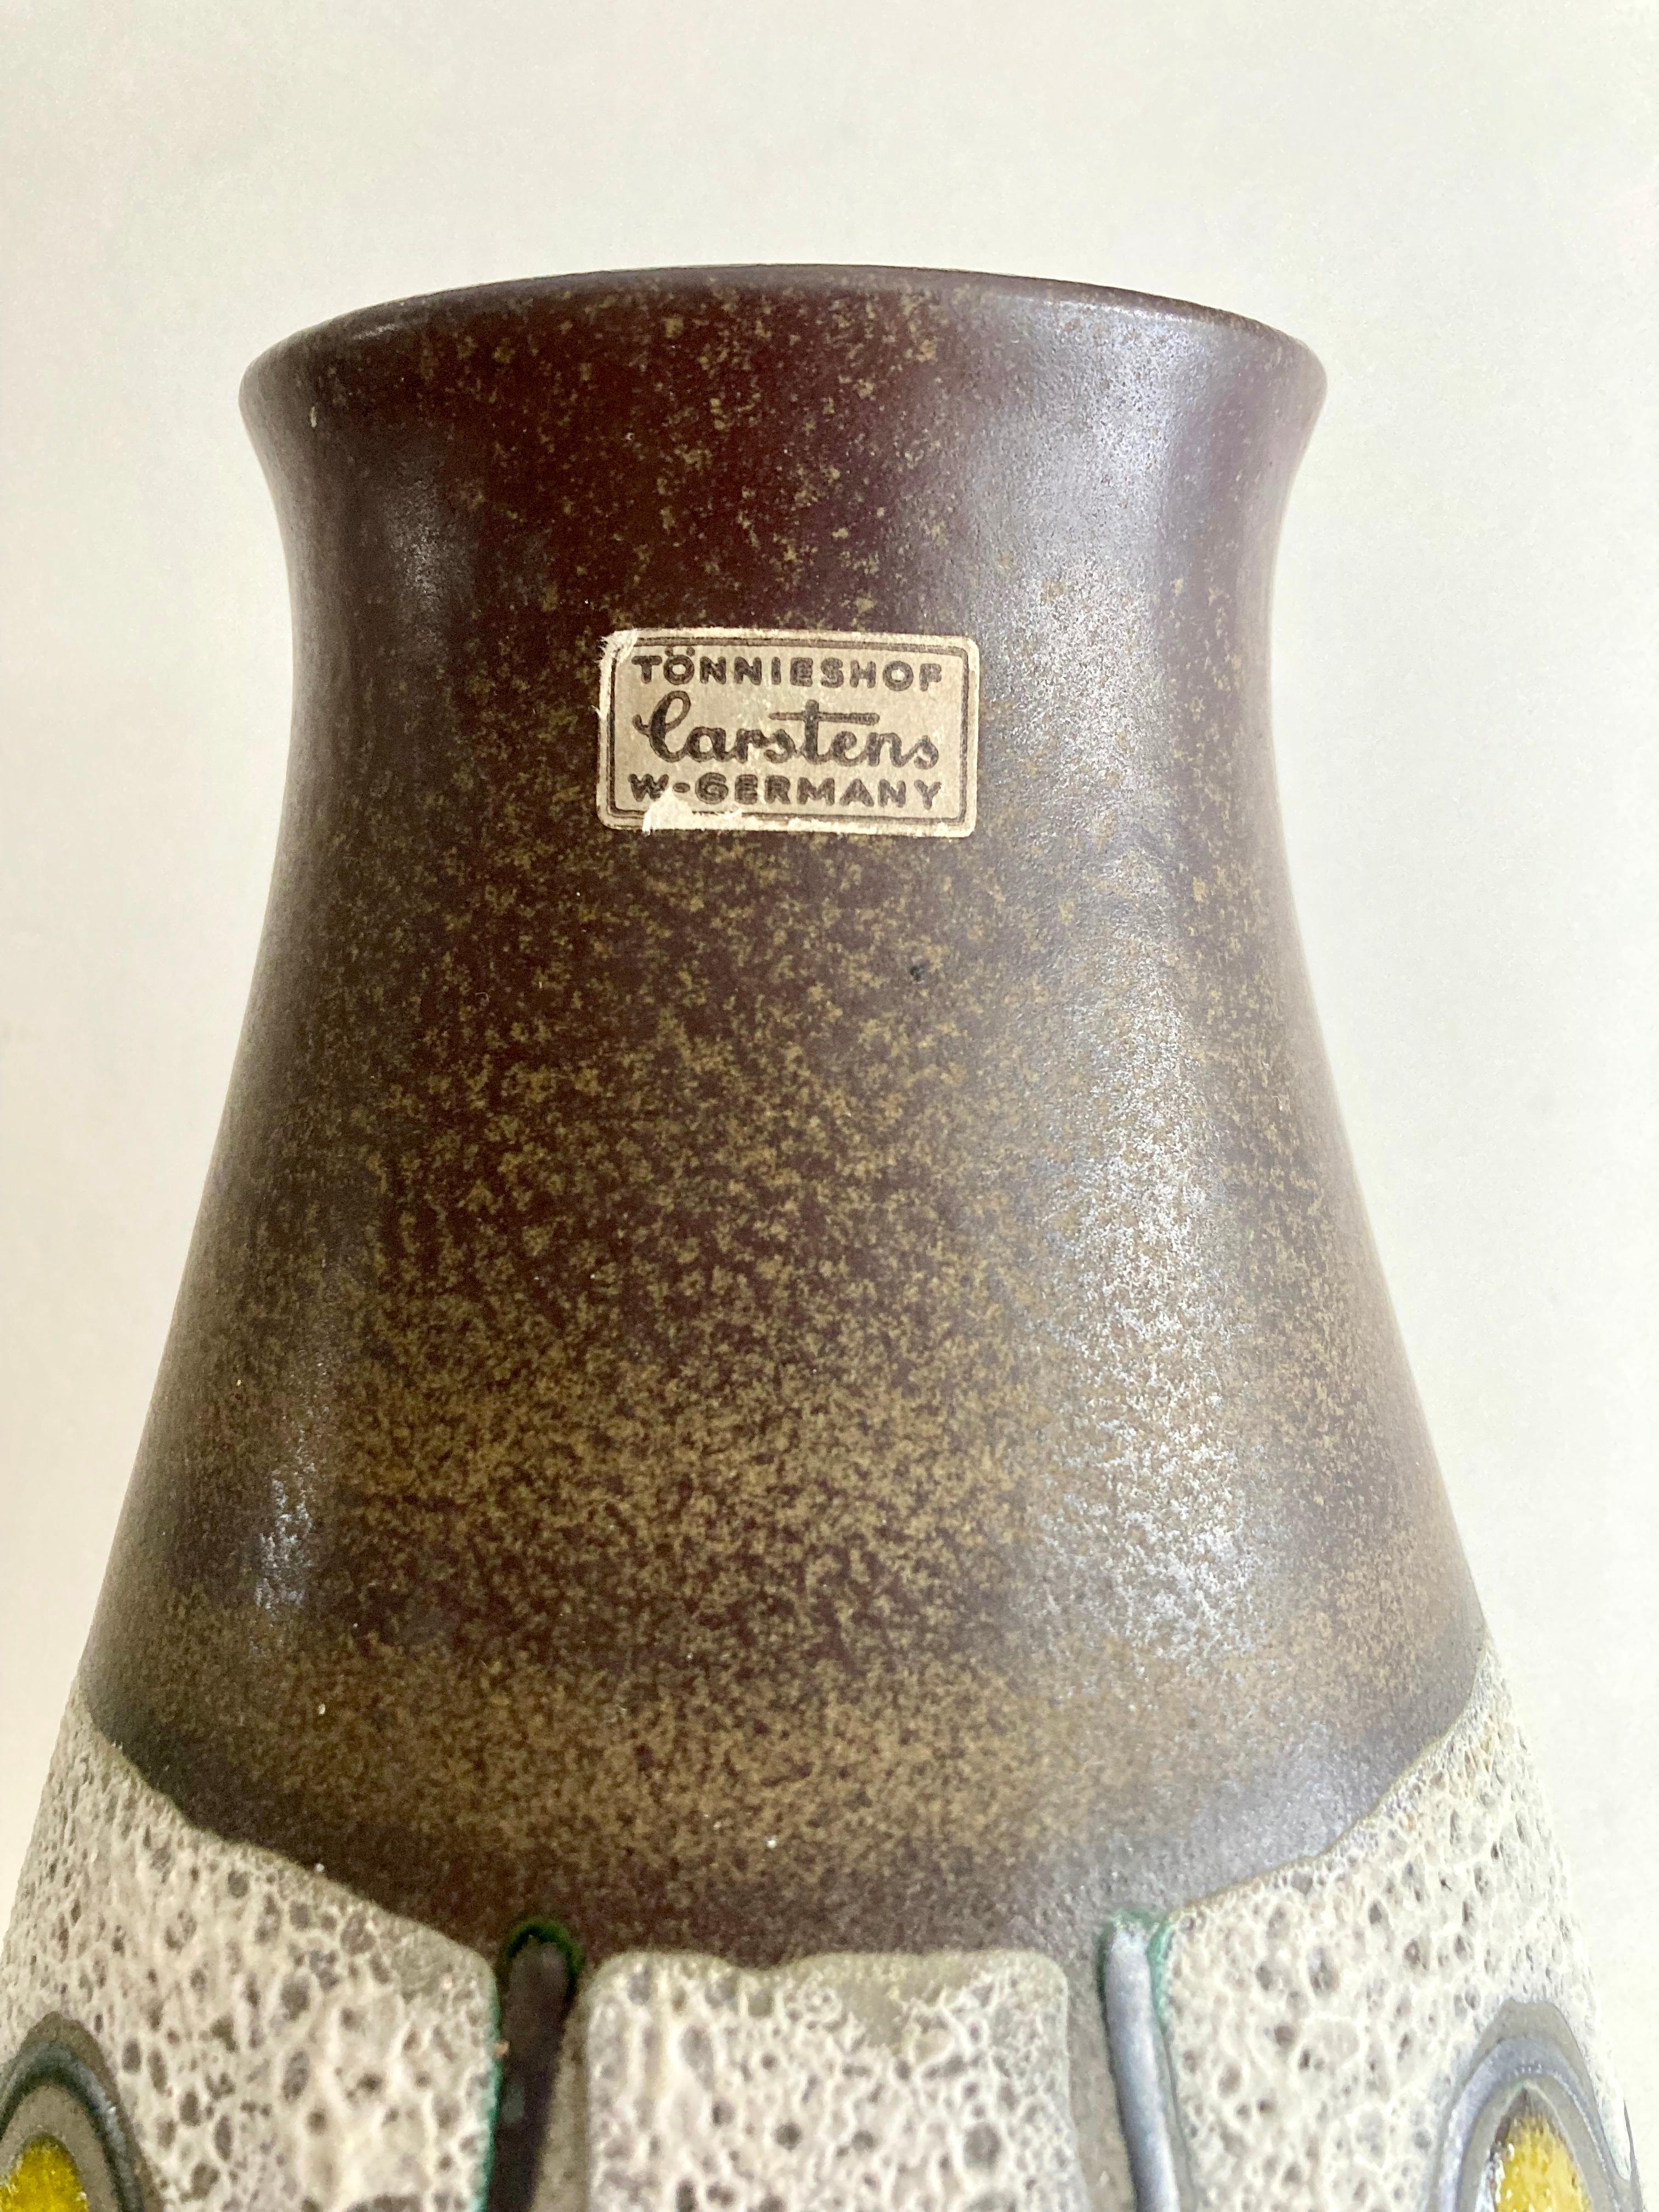 Diese authentische Keramikvase aus der Mitte des Jahrhunderts wurde in den 1960er Jahren von der westdeutschen Kunstkeramikmanufaktur Carstens Tönnieshof hergestellt. Wie man an den geprägten Markierungen auf dem Sockel erkennen kann, handelt es